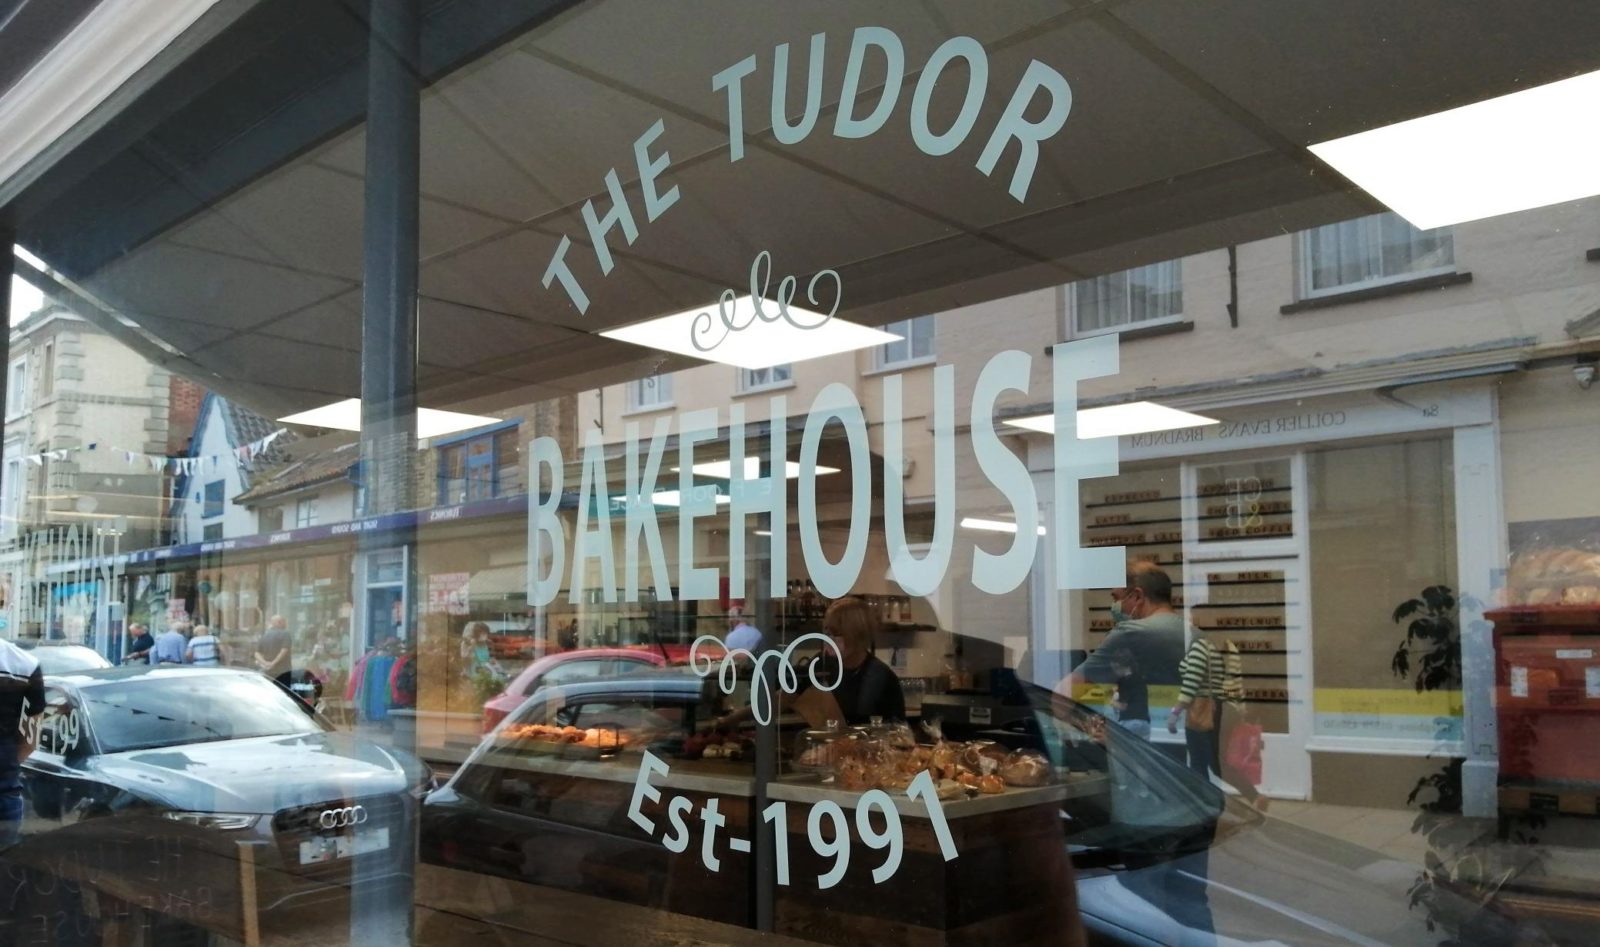 Tudor Bakehouse Harleston